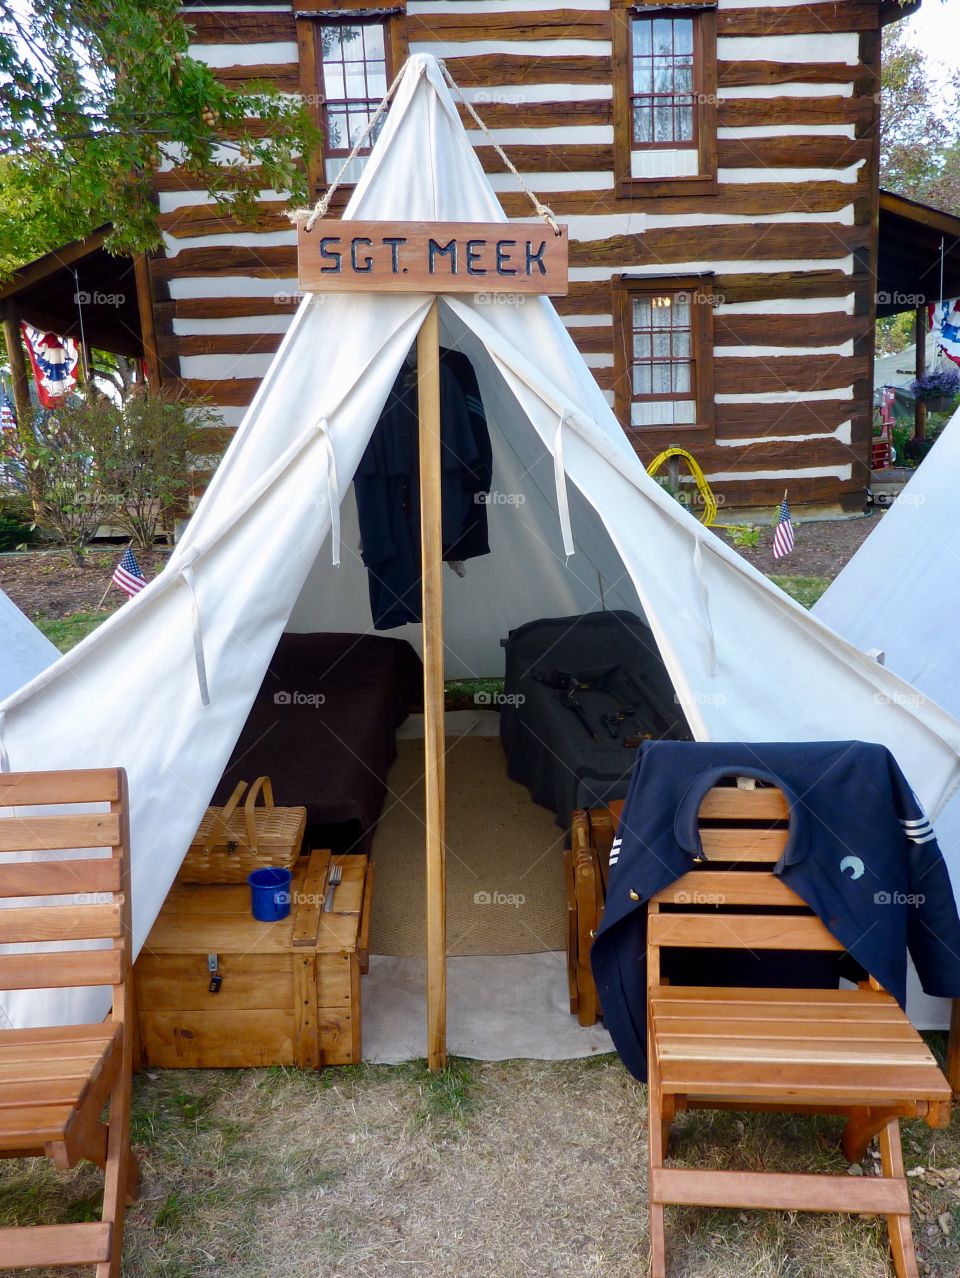 Tent Quarters of a SGT. Meek